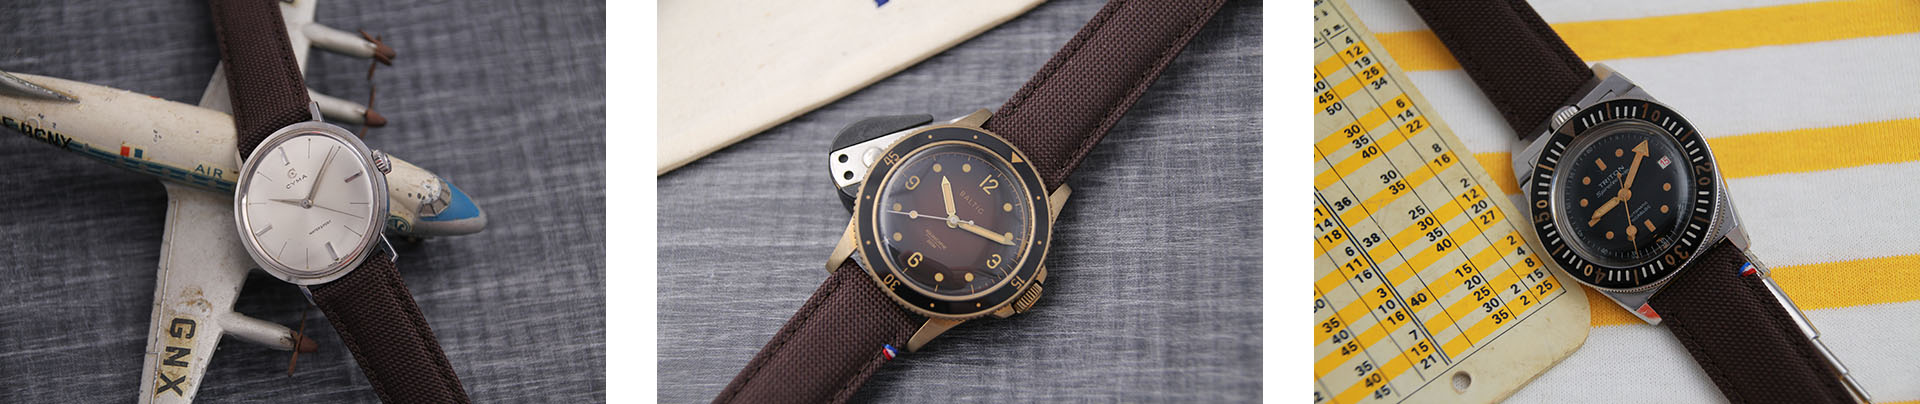 Association de bracelets en toile marron sur des montres vintage